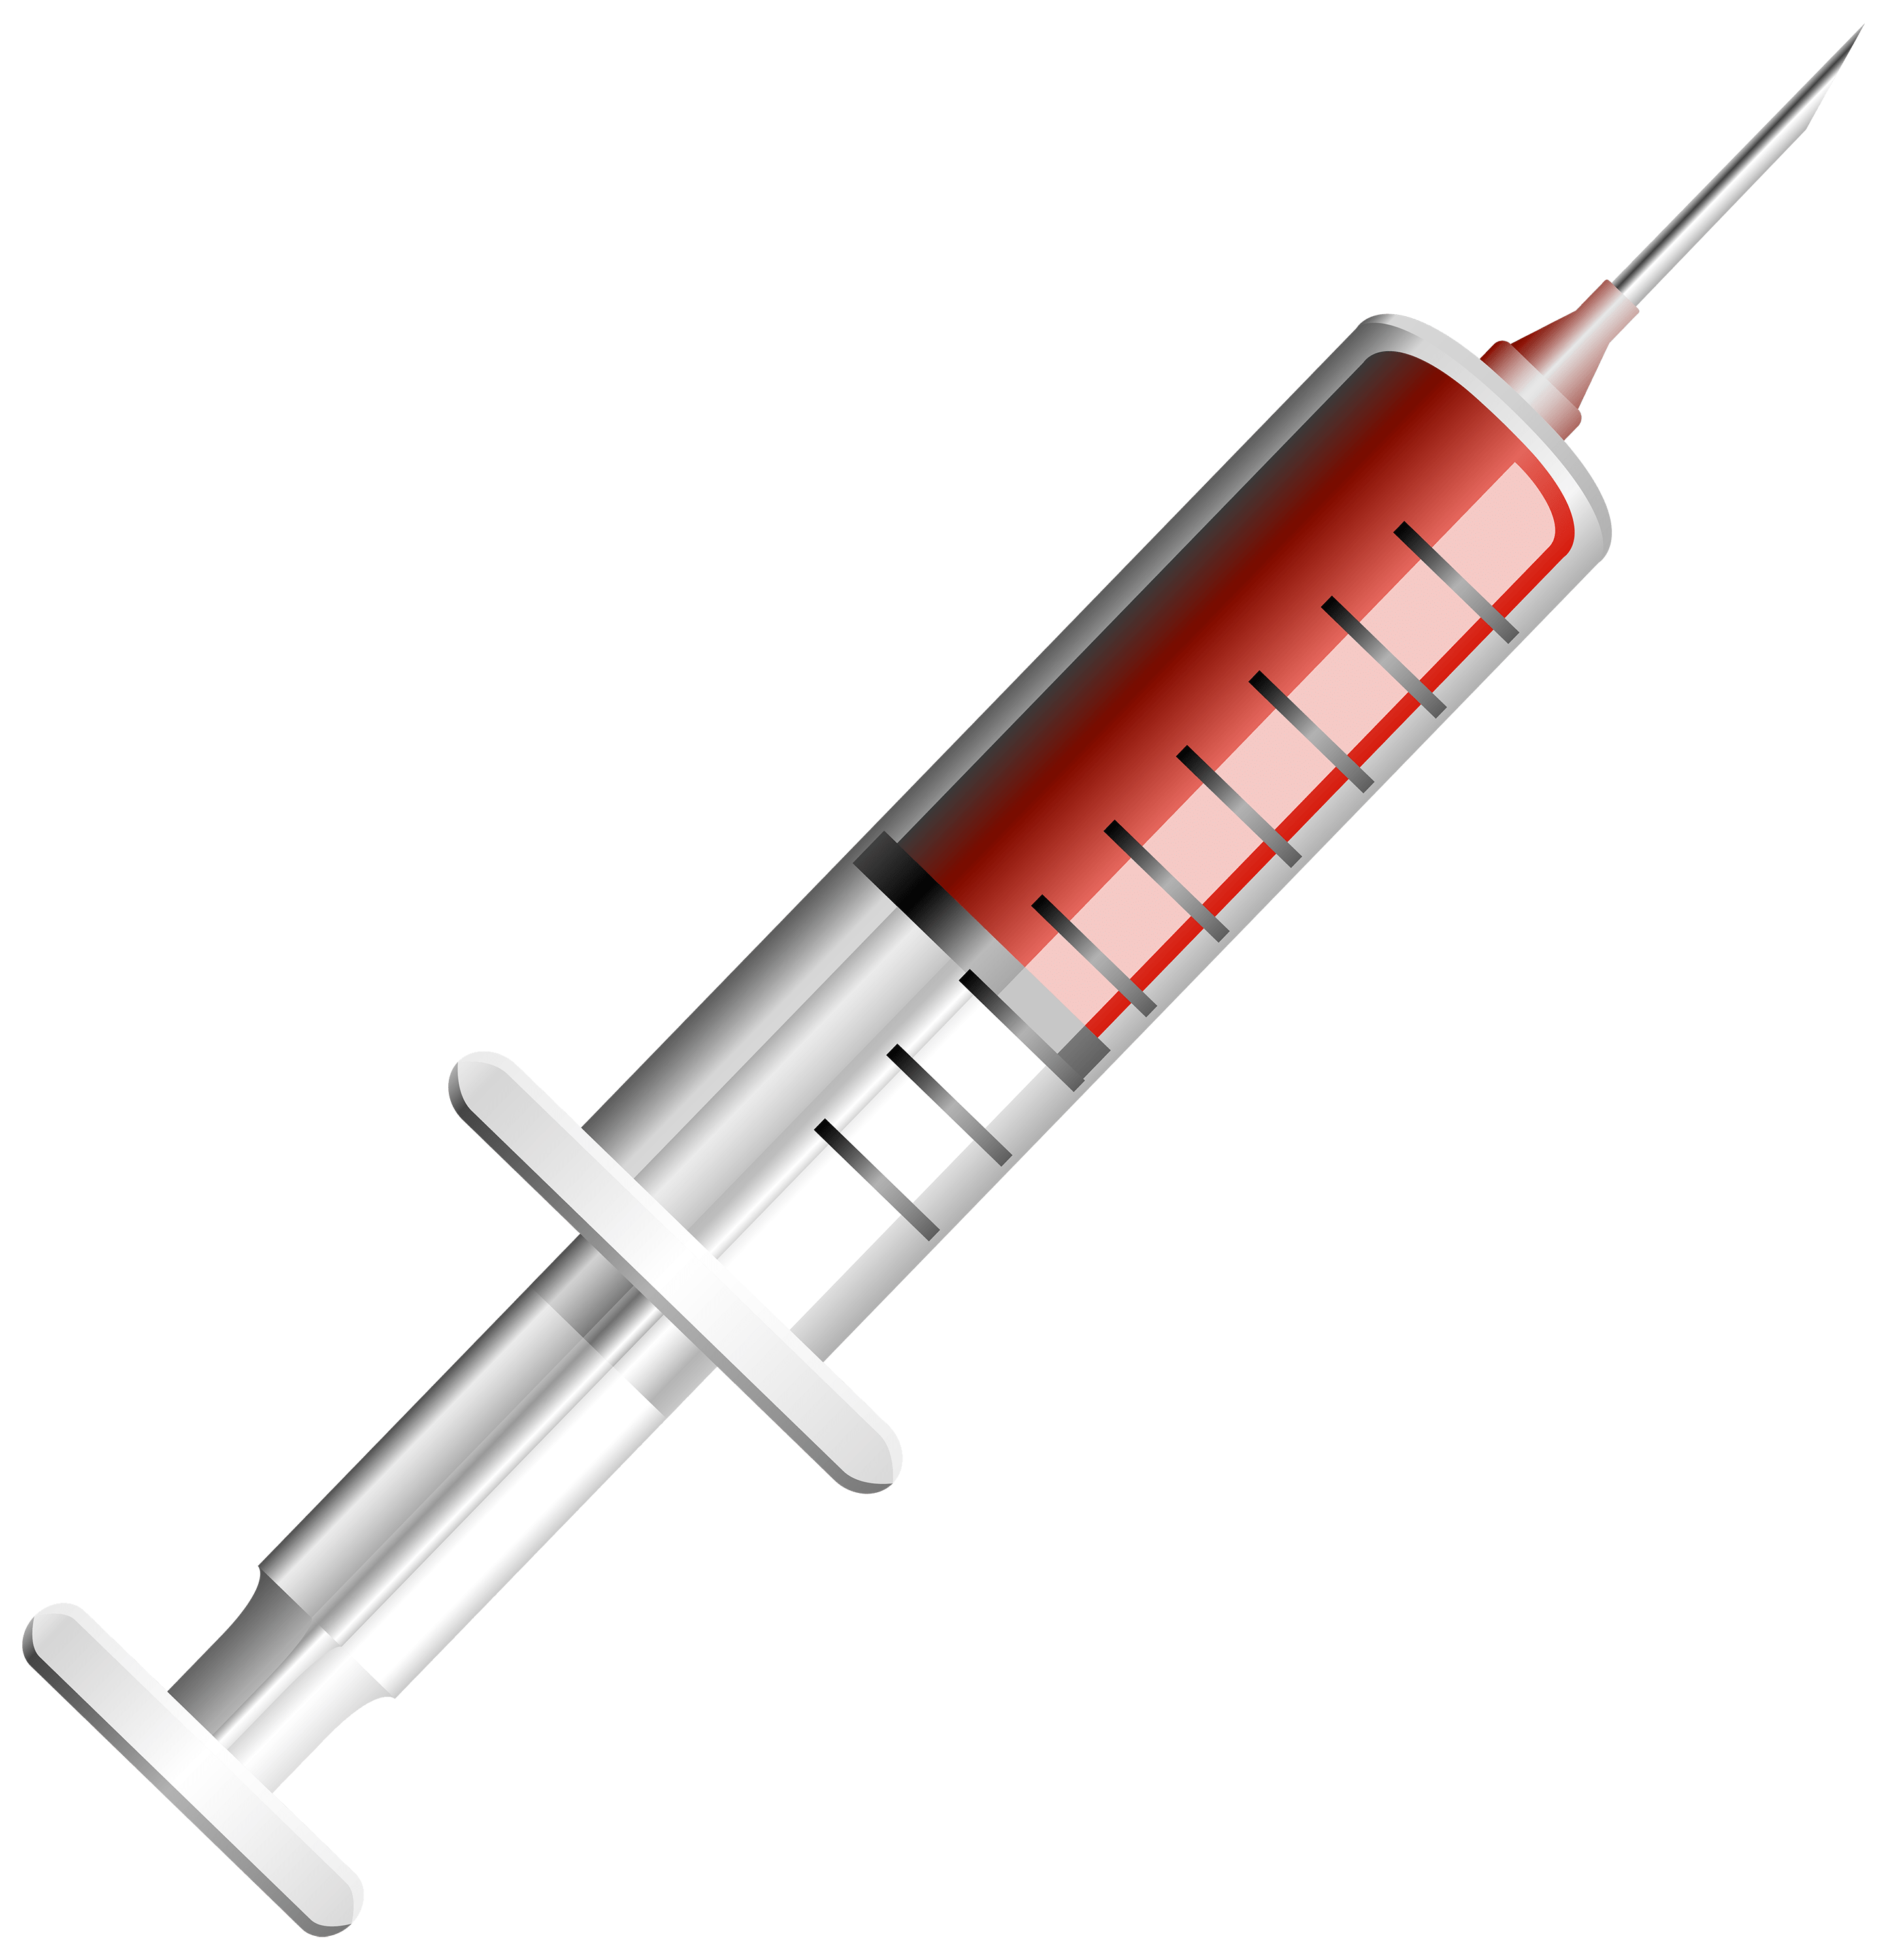 Syringe Illustration Red - Medical Syringe, Transparent background PNG HD thumbnail